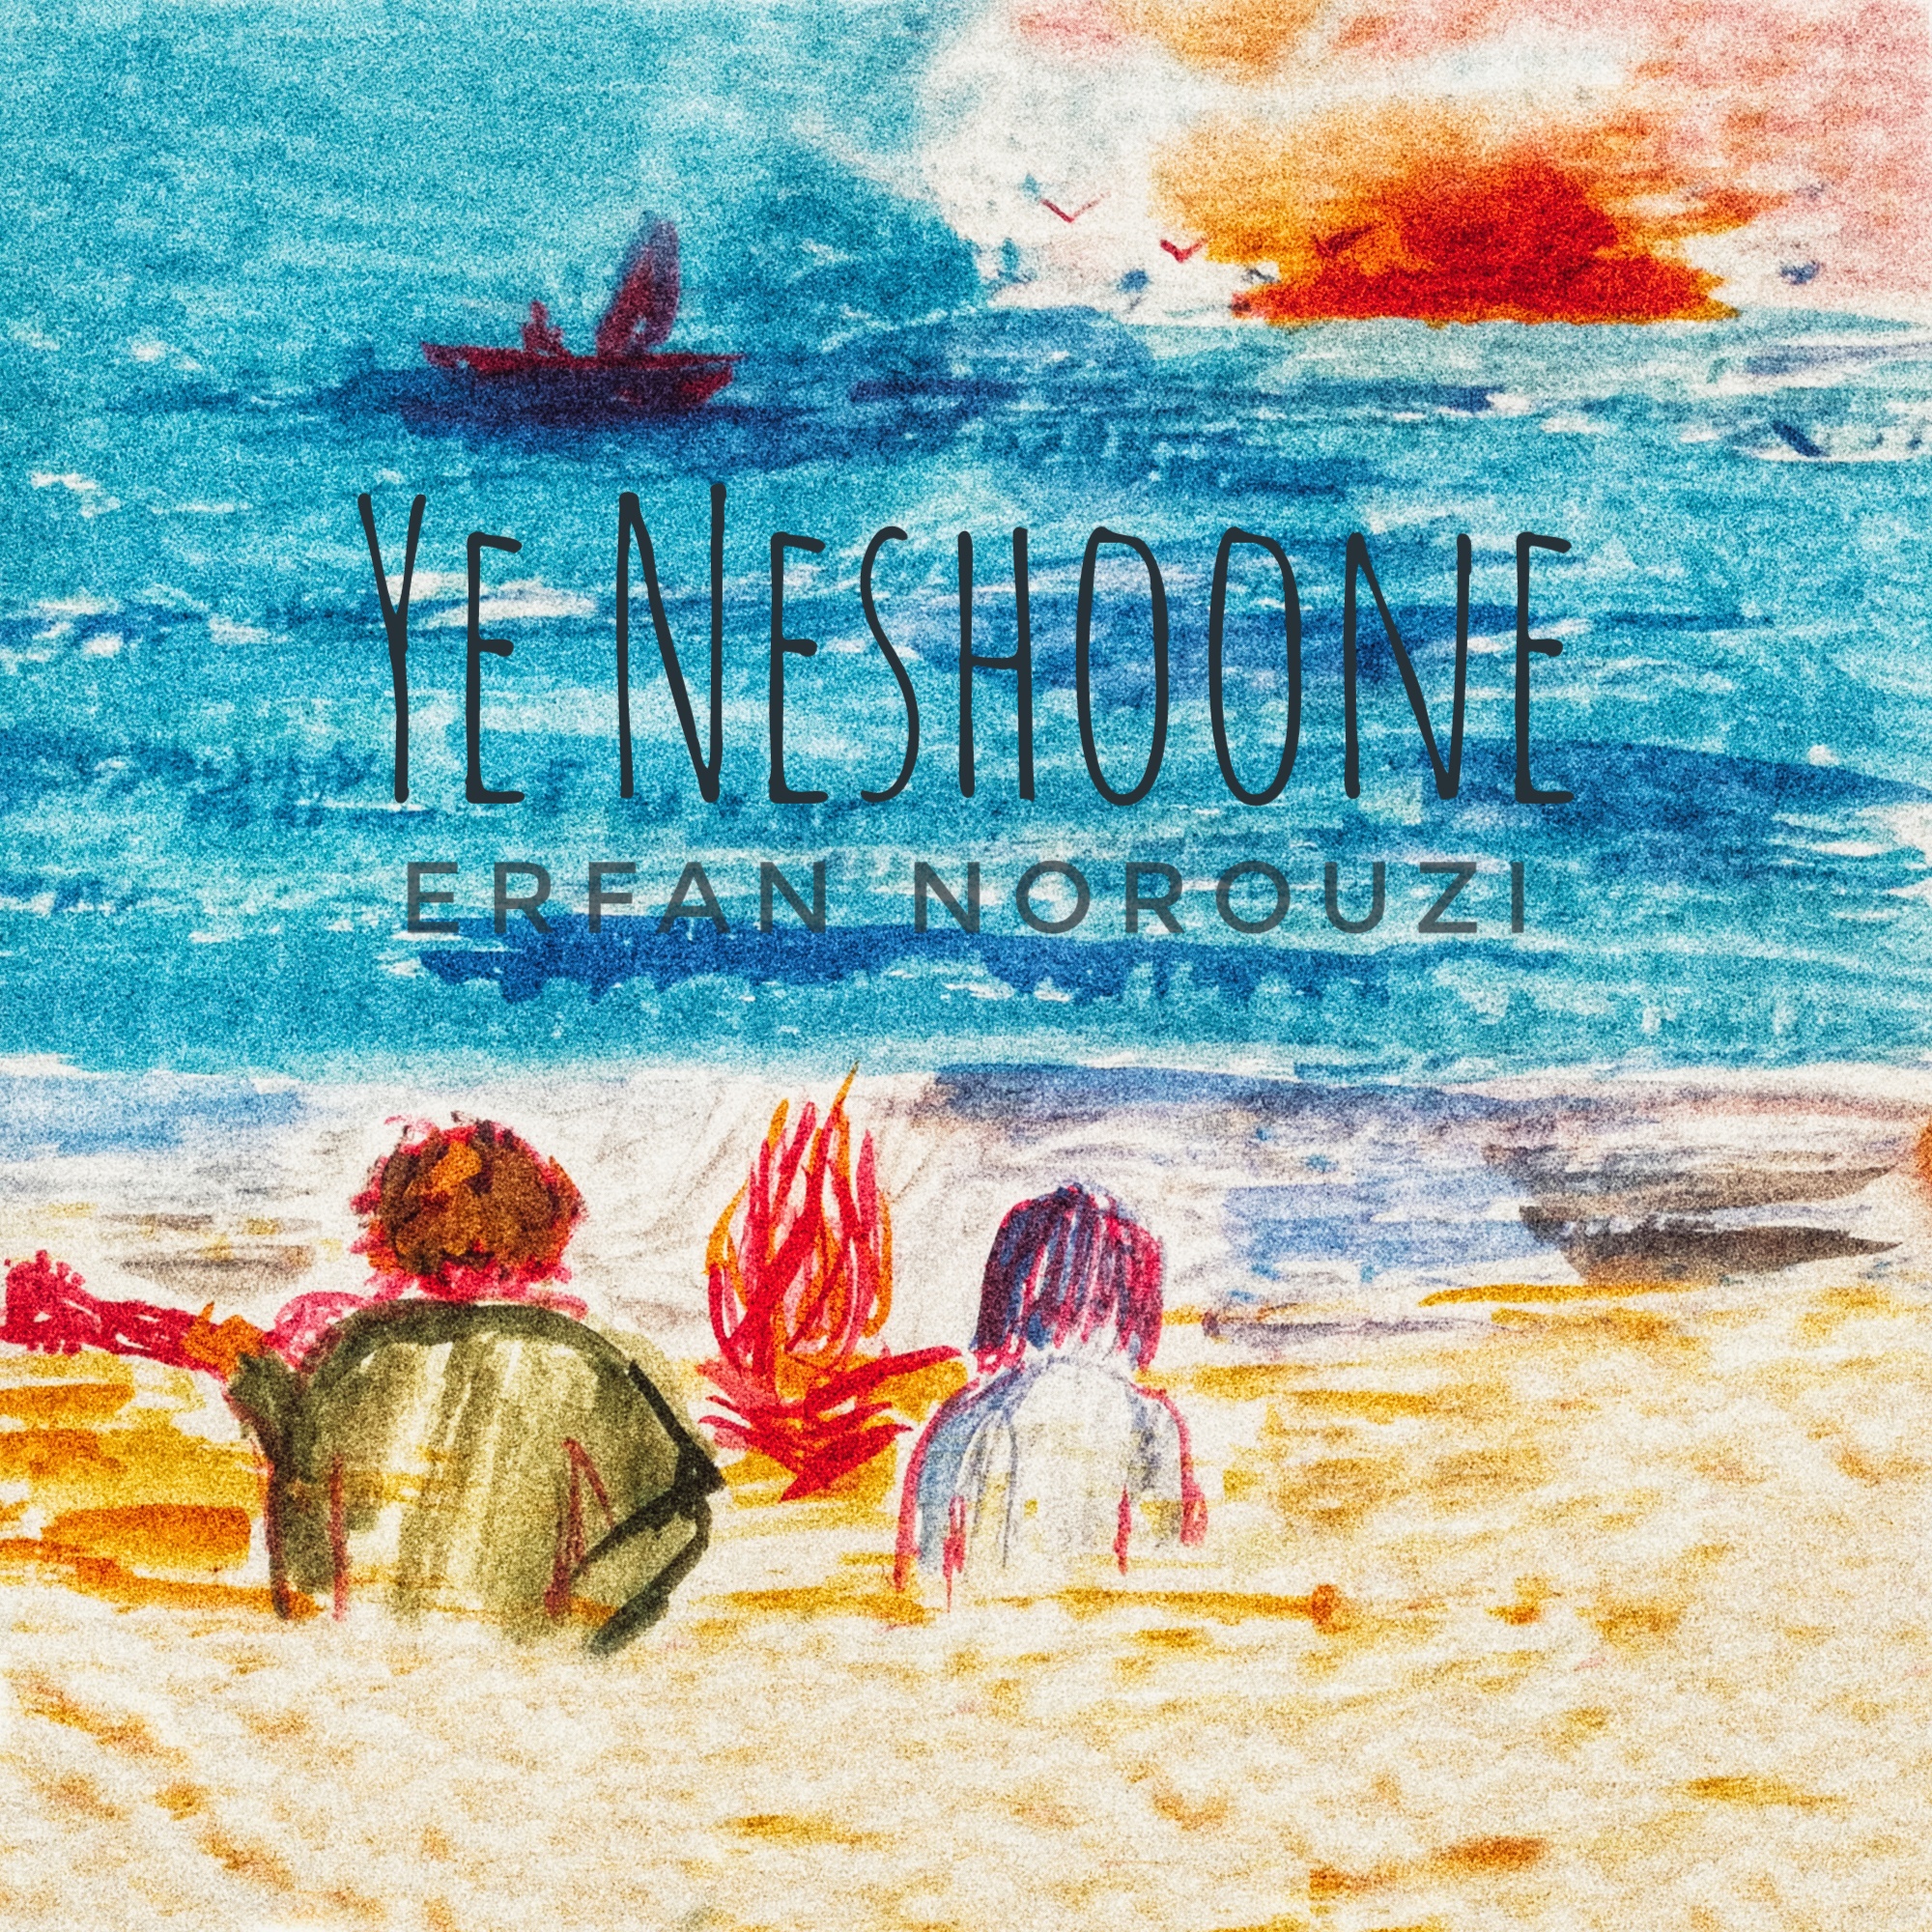  دانلود آهنگ جدید عرفان نوروزی - یه نشونه | Download New Music By Ye Neshune - Erfan Norouzi